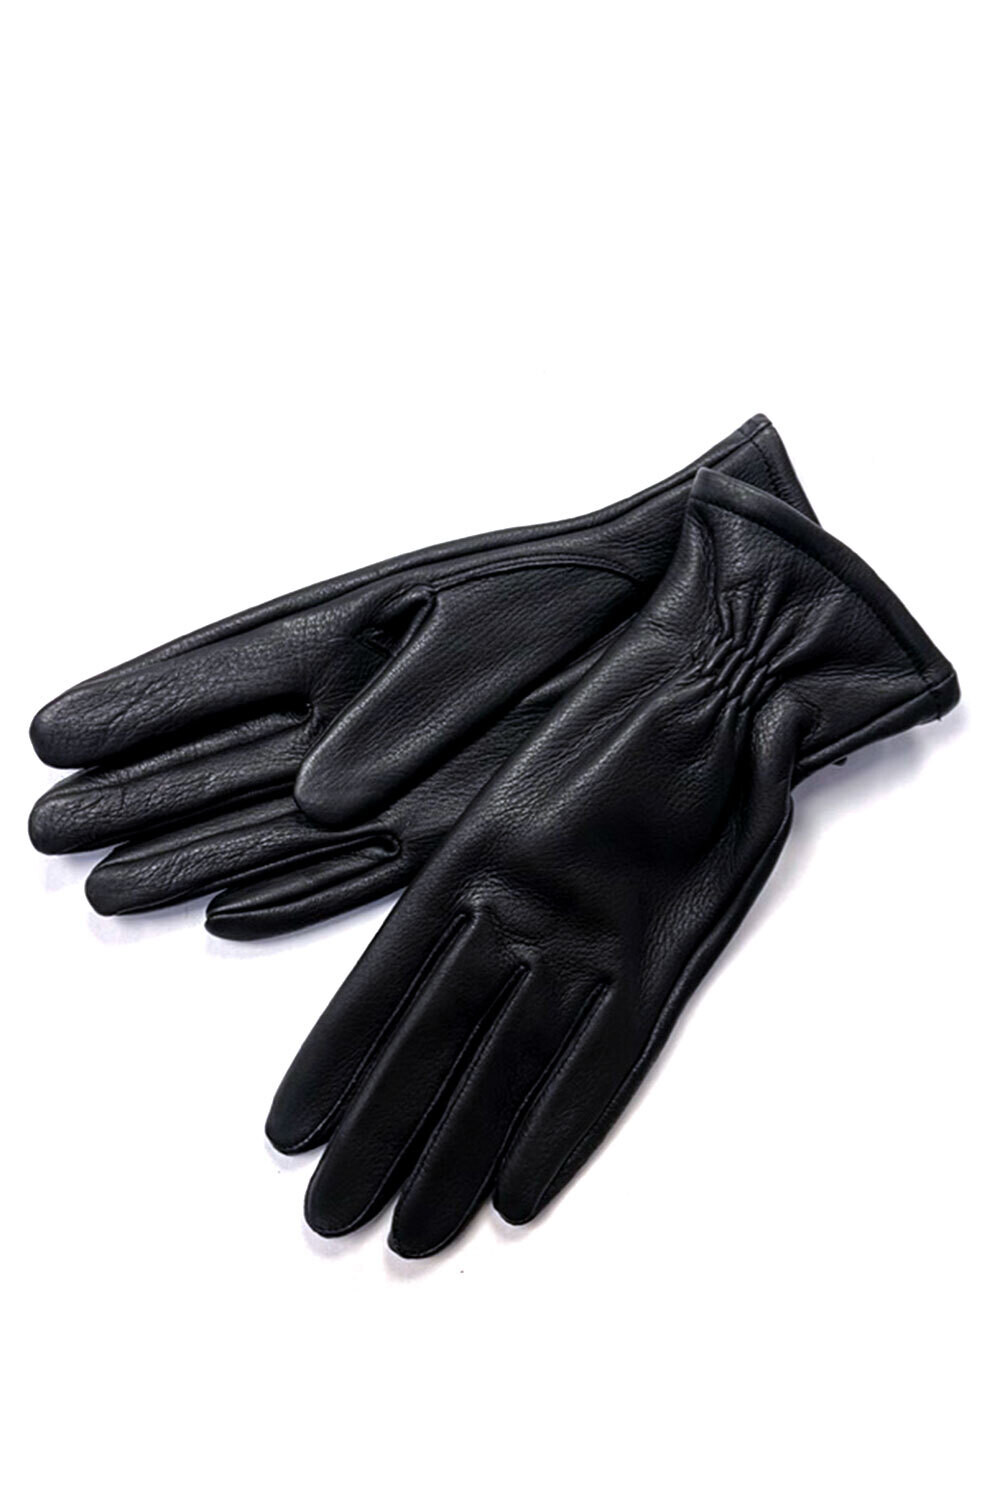 HS15 SI Handschuhe